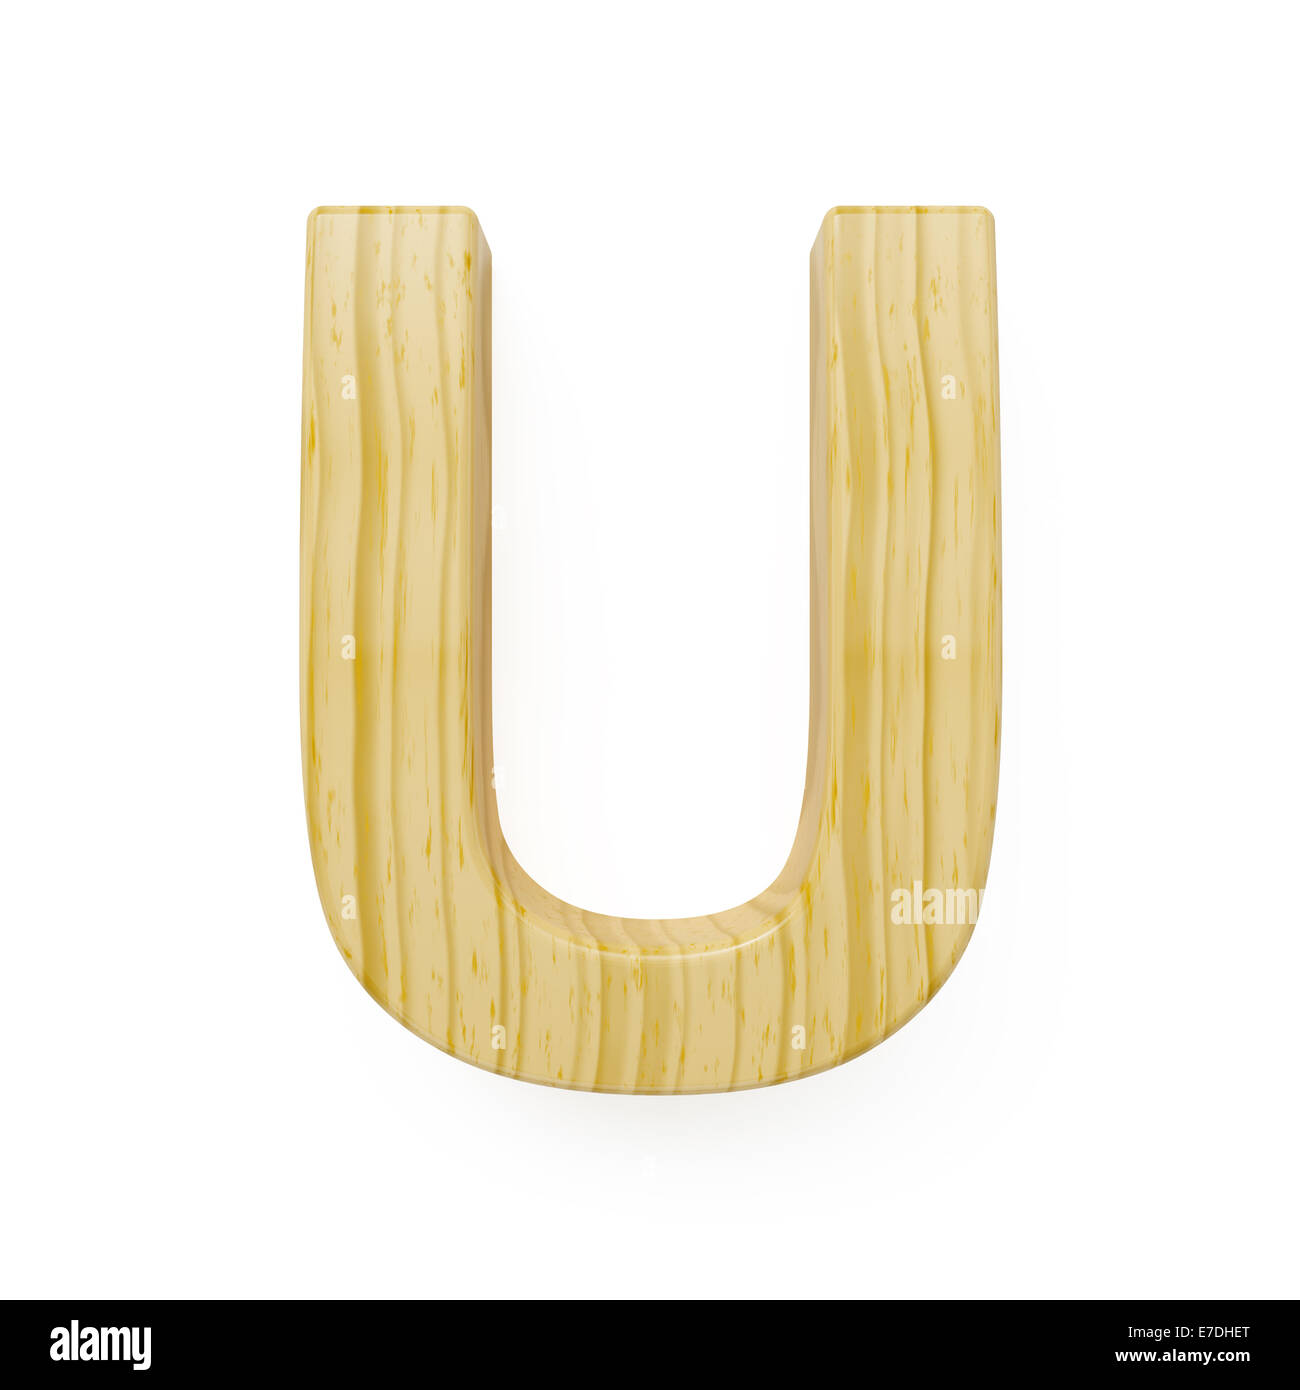 Wood alphabet letter symbol - U. Isolated on white background Stock Photo